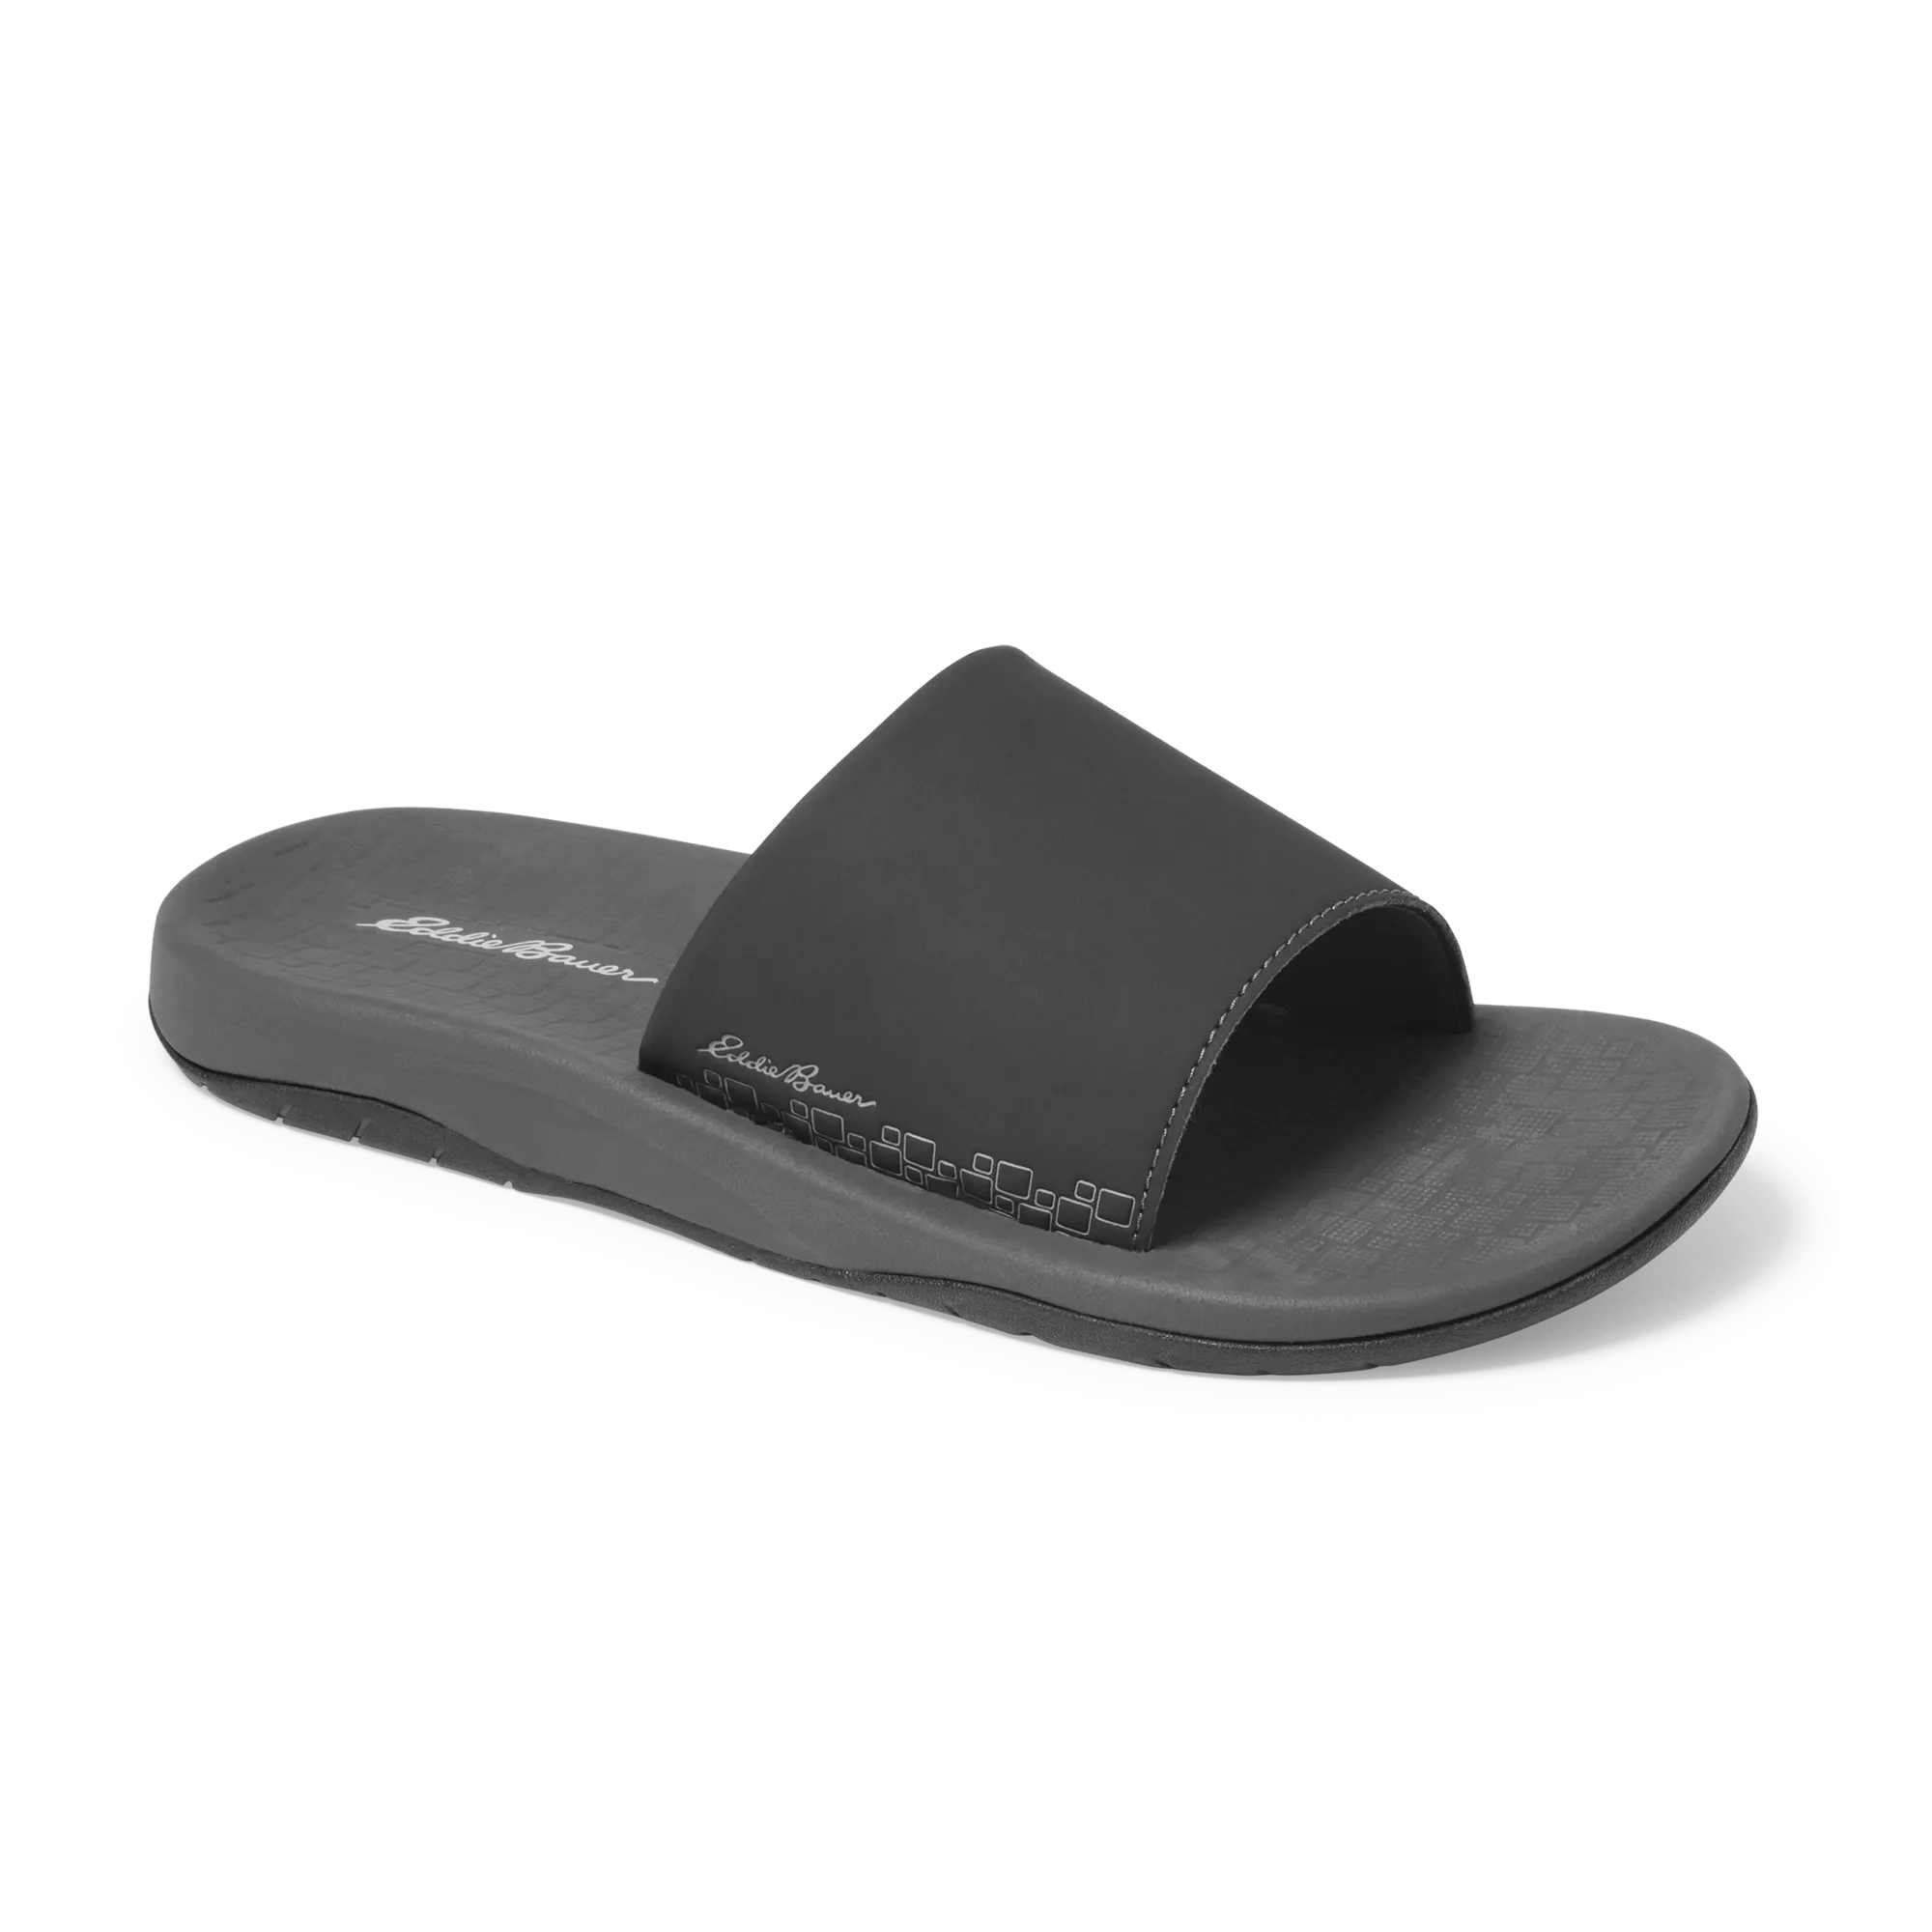 Break Point Slide Sandals